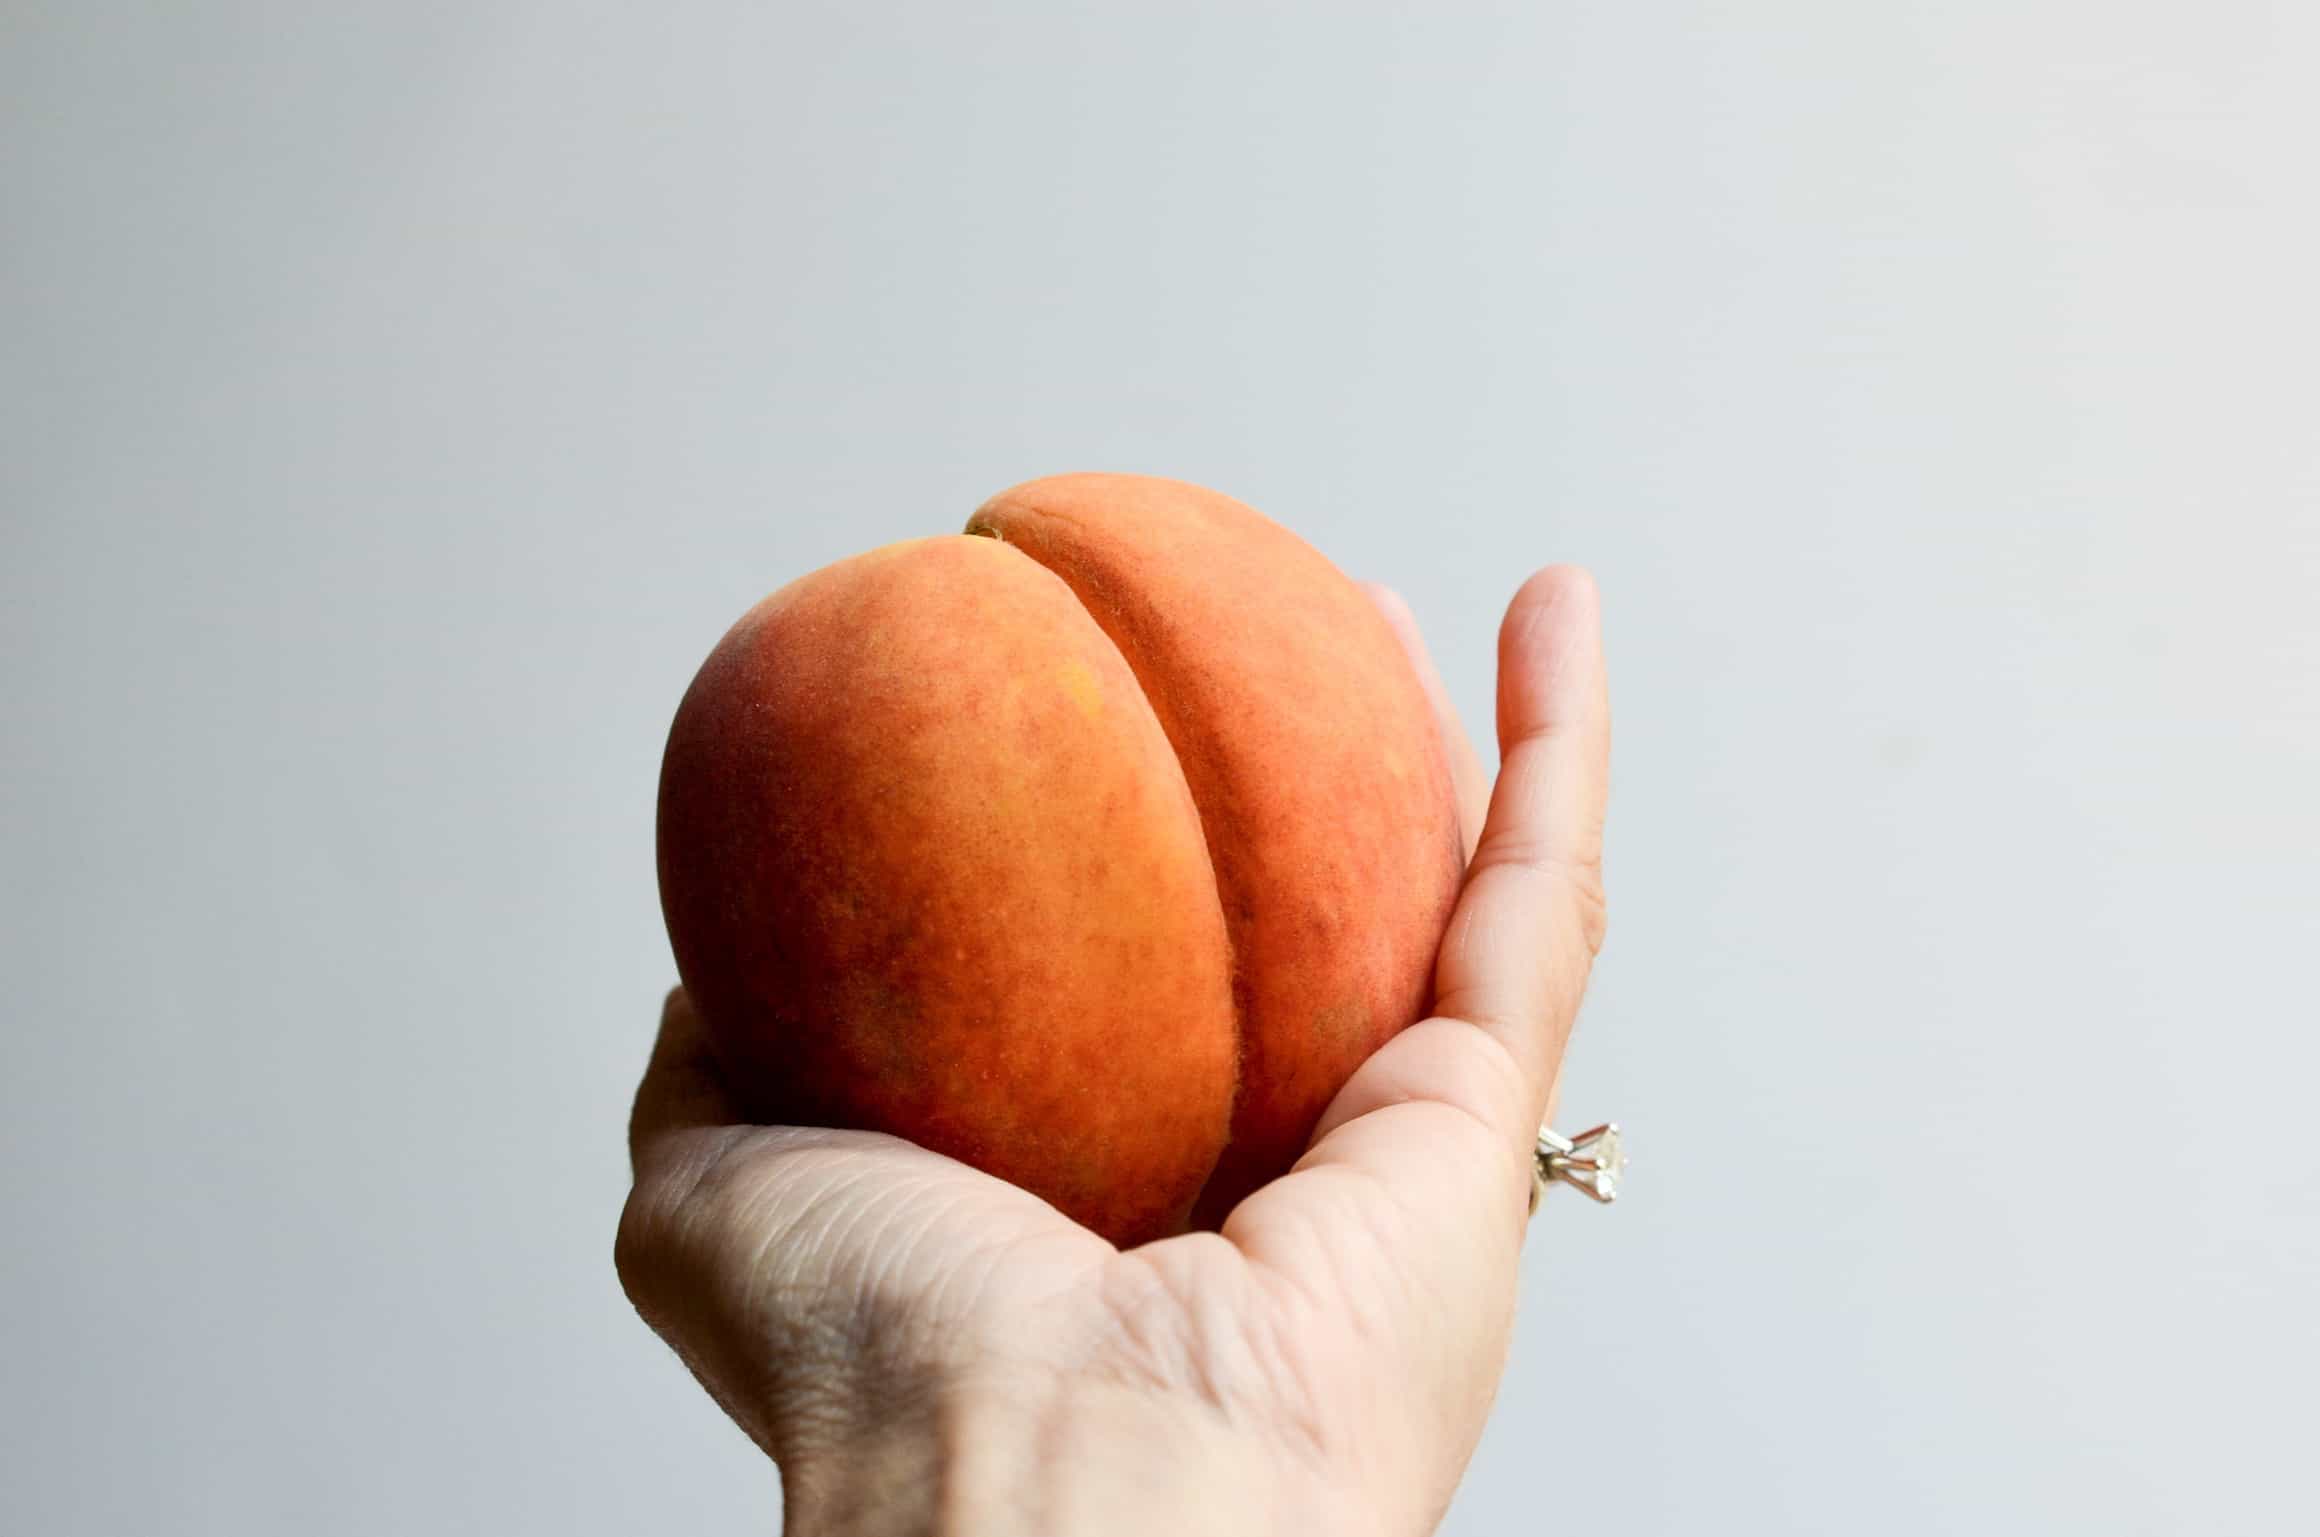 peach season is still here